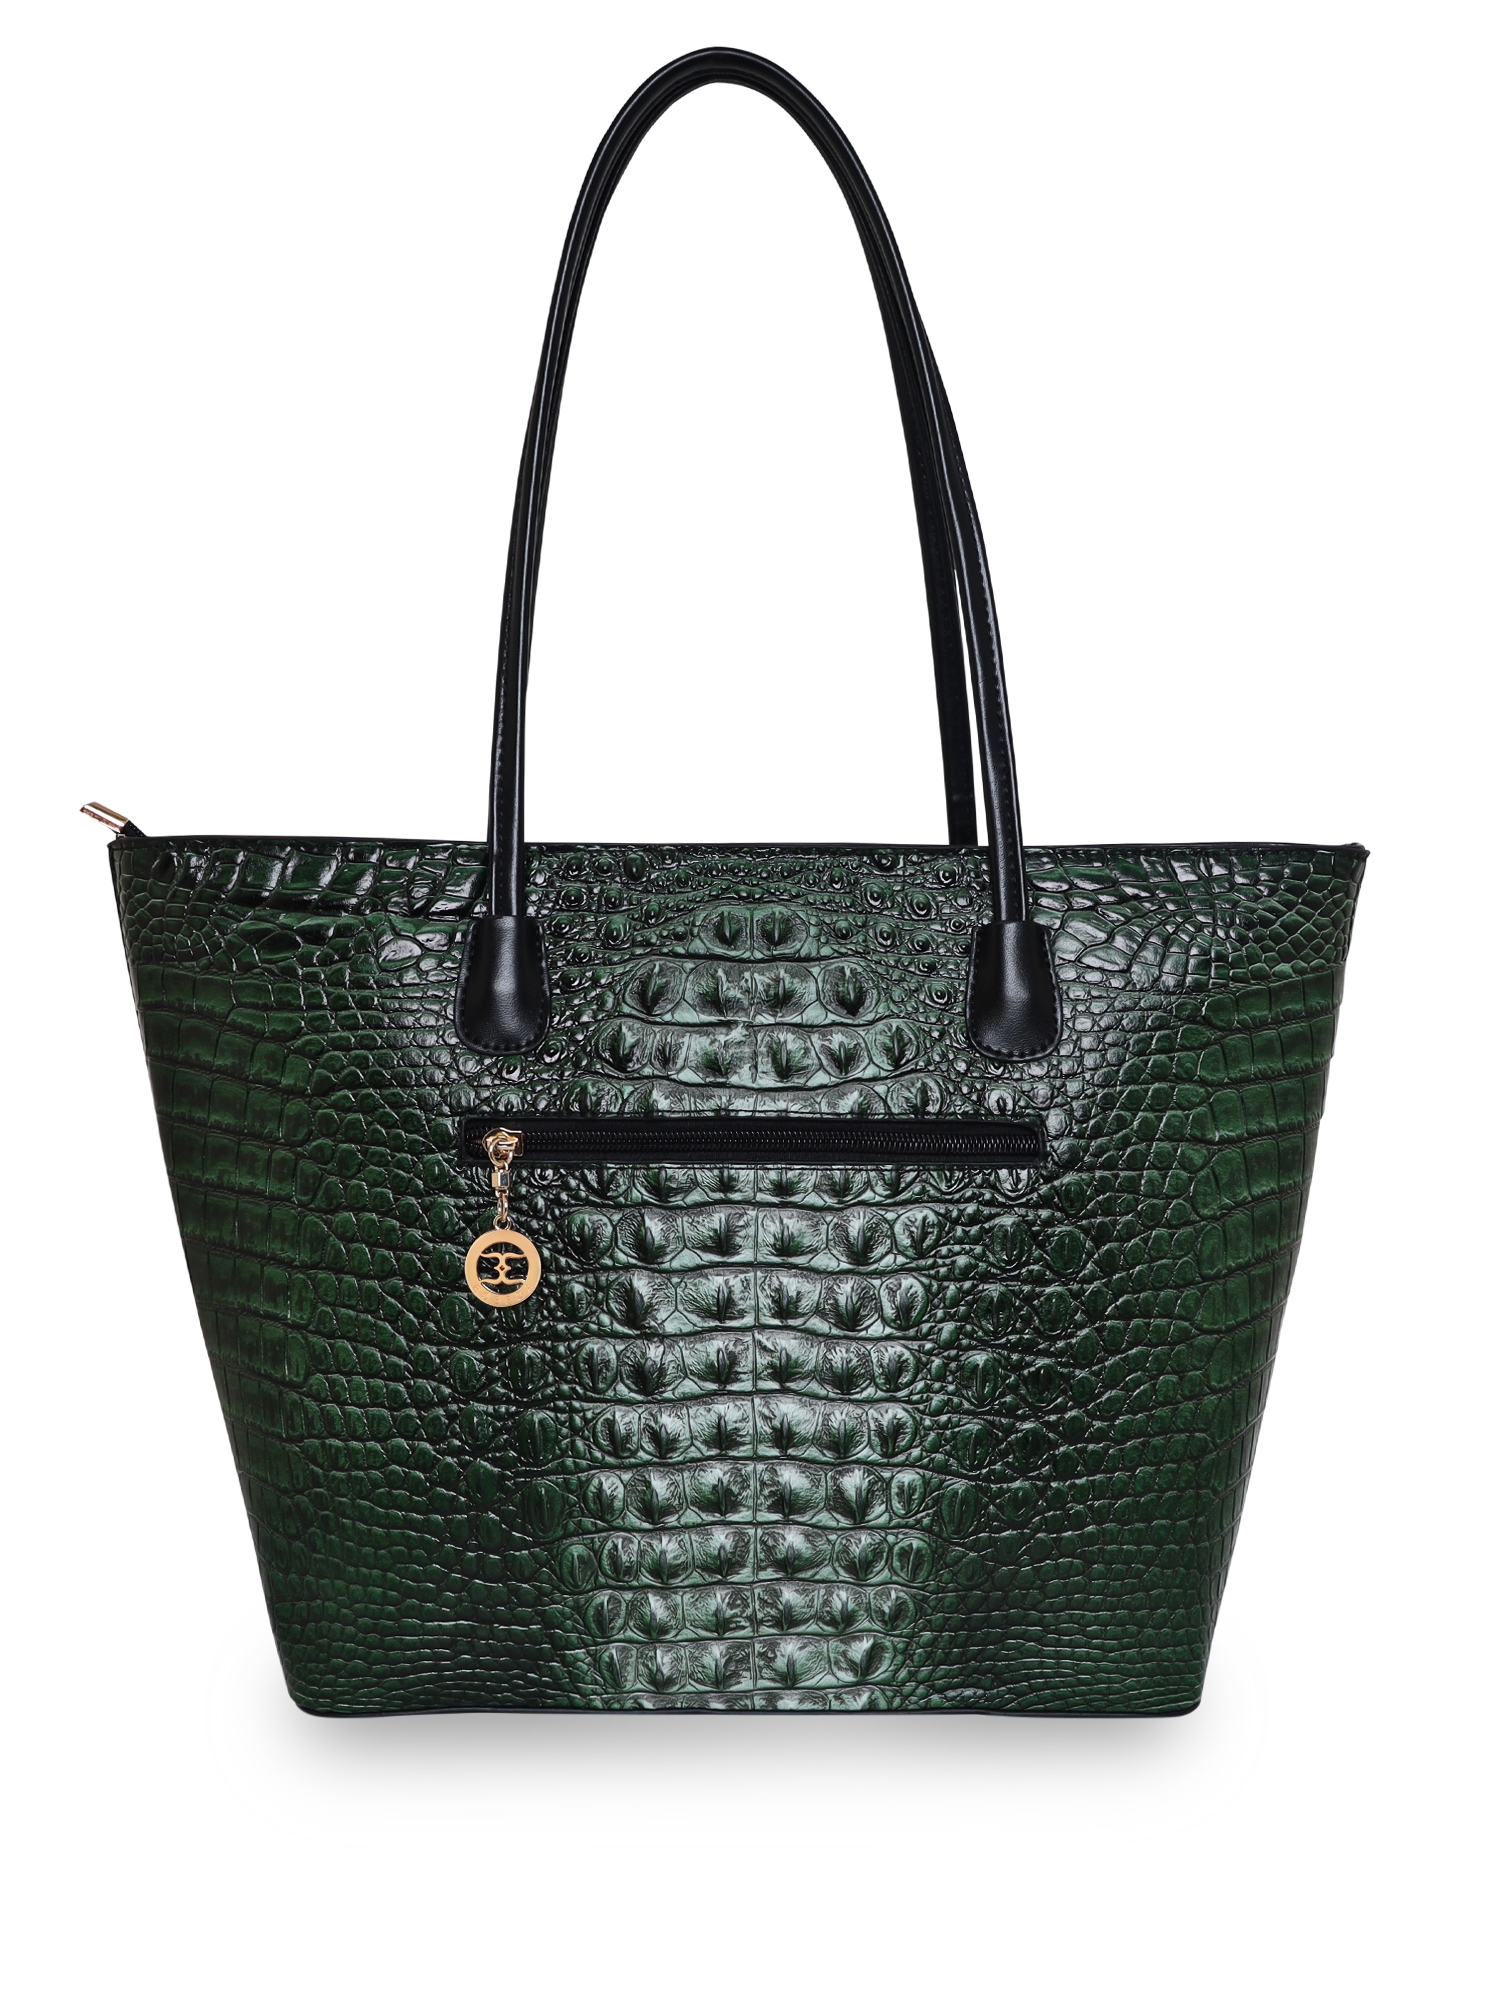 ESBEDA | ESBEDA Grey Color Crocodile Pattern Printed Handbag For Women 2